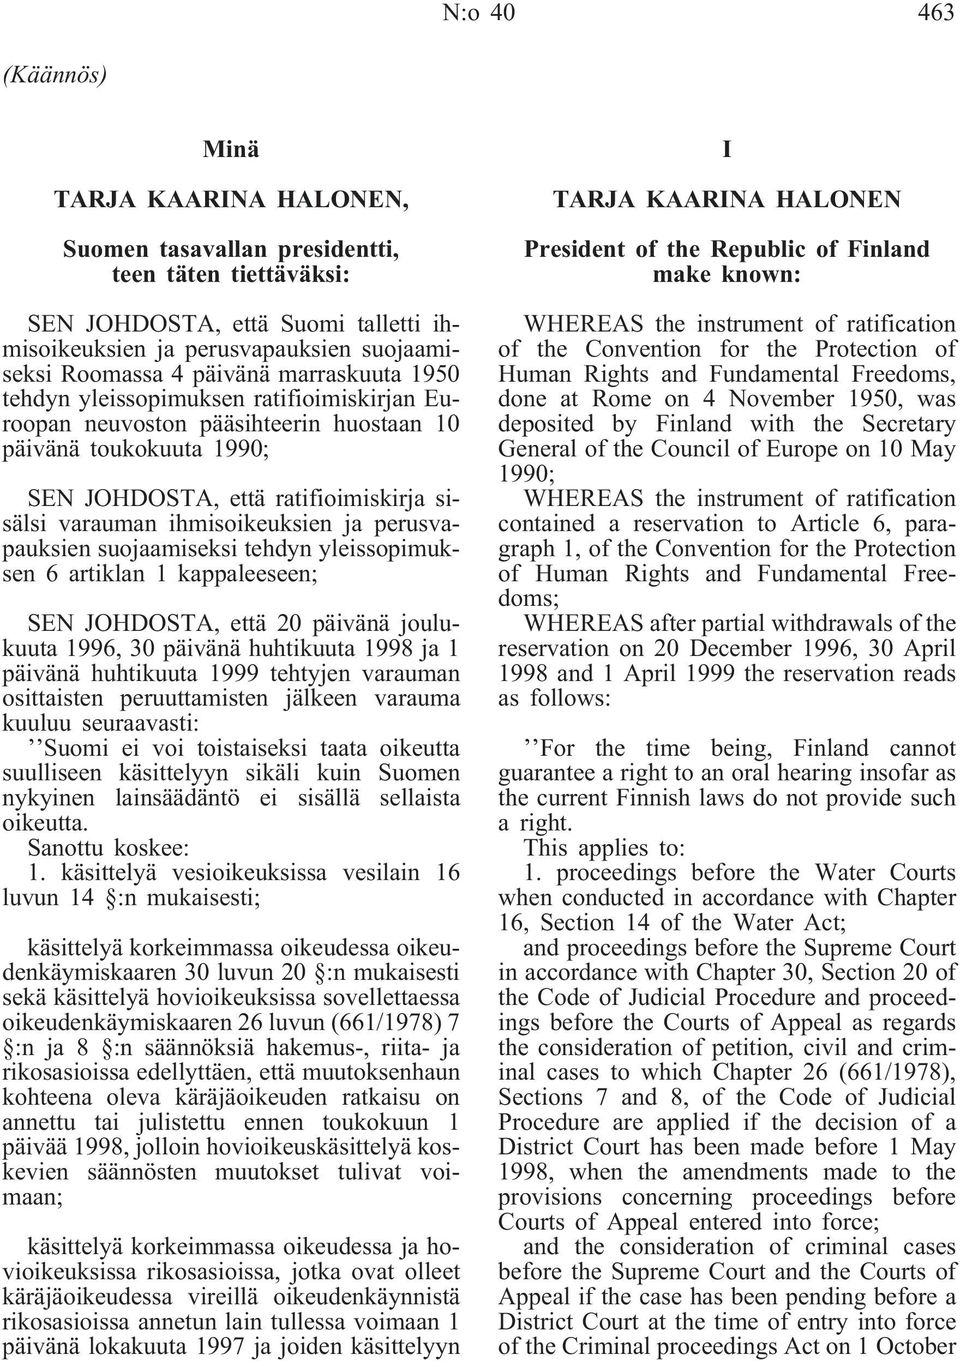 ihmisoikeuksien ja perusvapauksien suojaamiseksi tehdyn yleissopimuksen 6 artiklan 1 kappaleeseen; SEN JOHDOSTA, että 20 päivänä joulukuuta 1996, 30 päivänä huhtikuuta 1998 ja 1 päivänä huhtikuuta